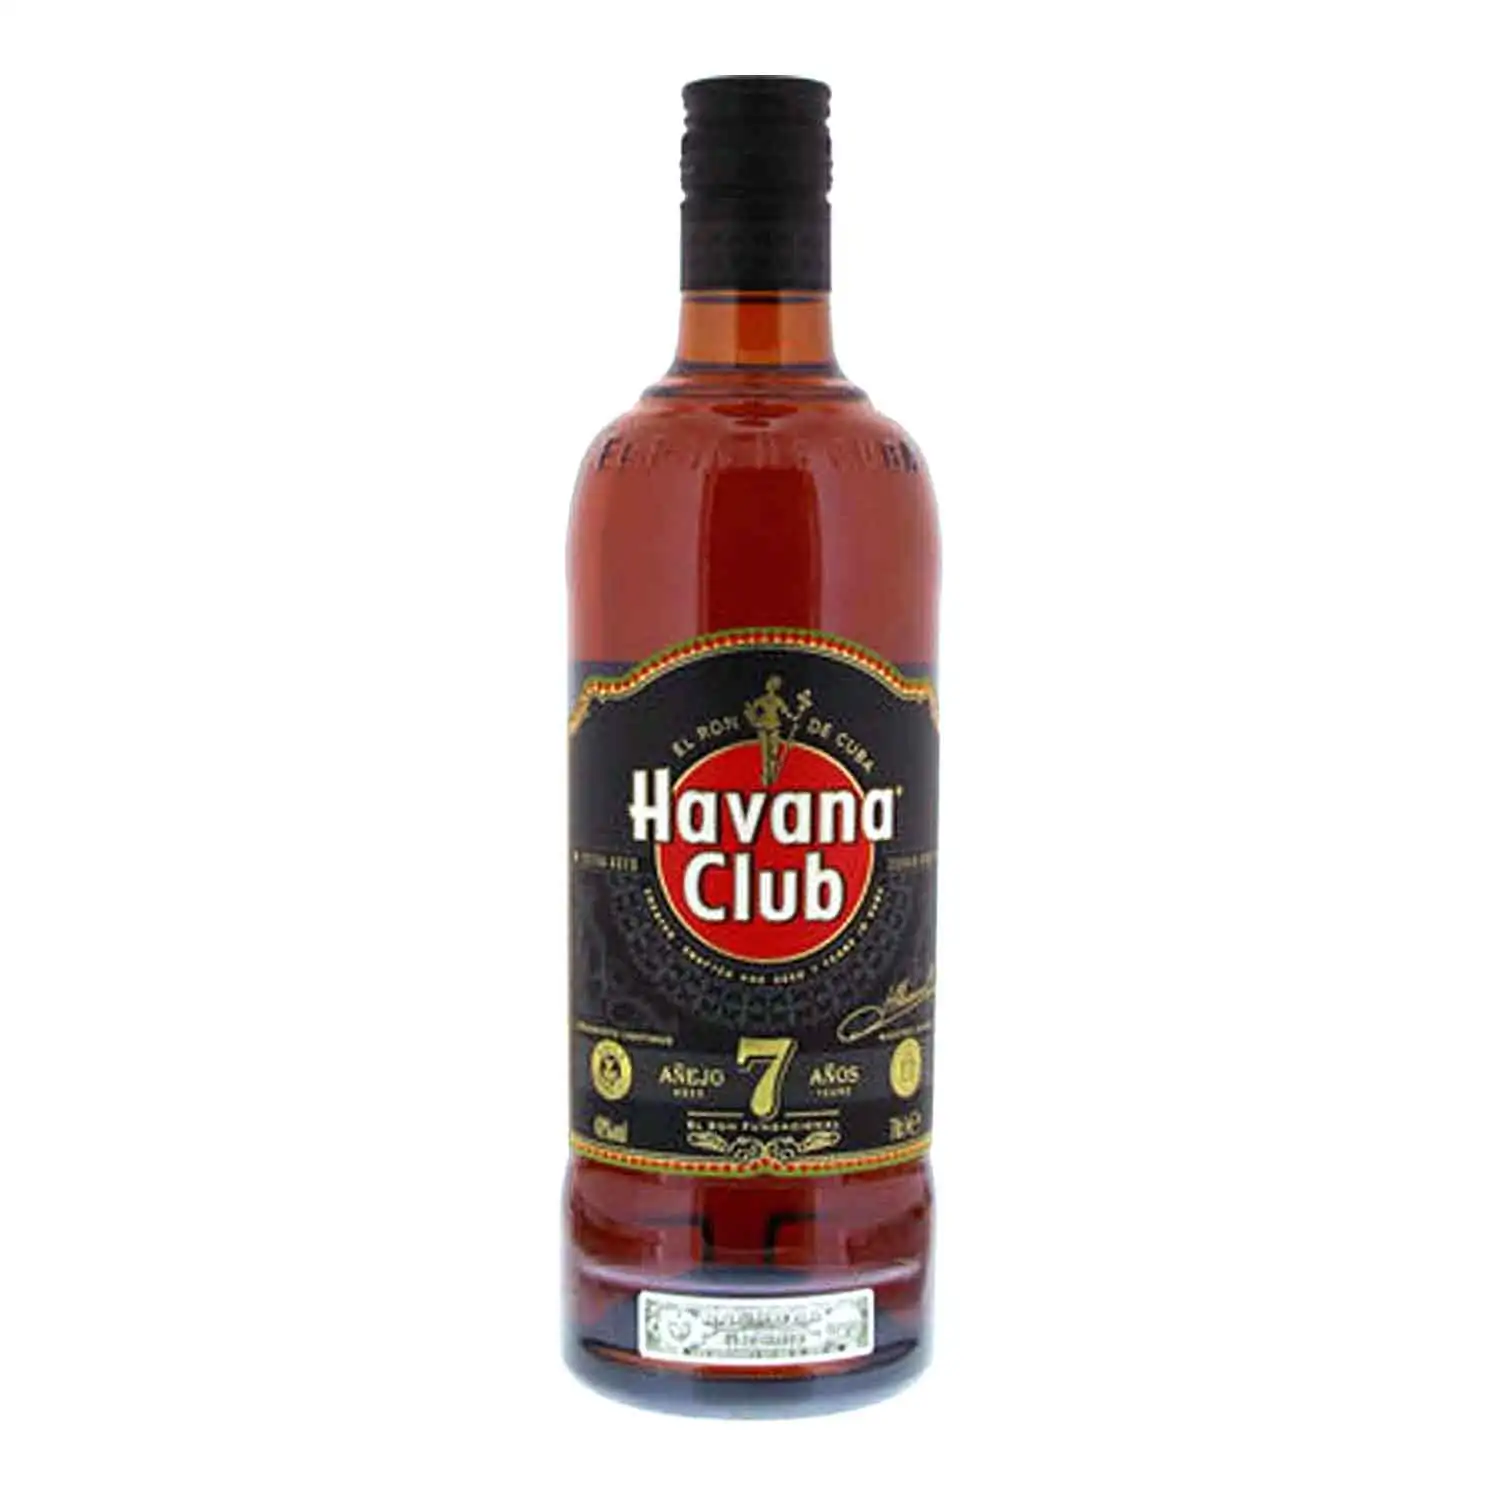 Havana Club 7 años 70cl Alc 40% - Buy at Real Tobacco